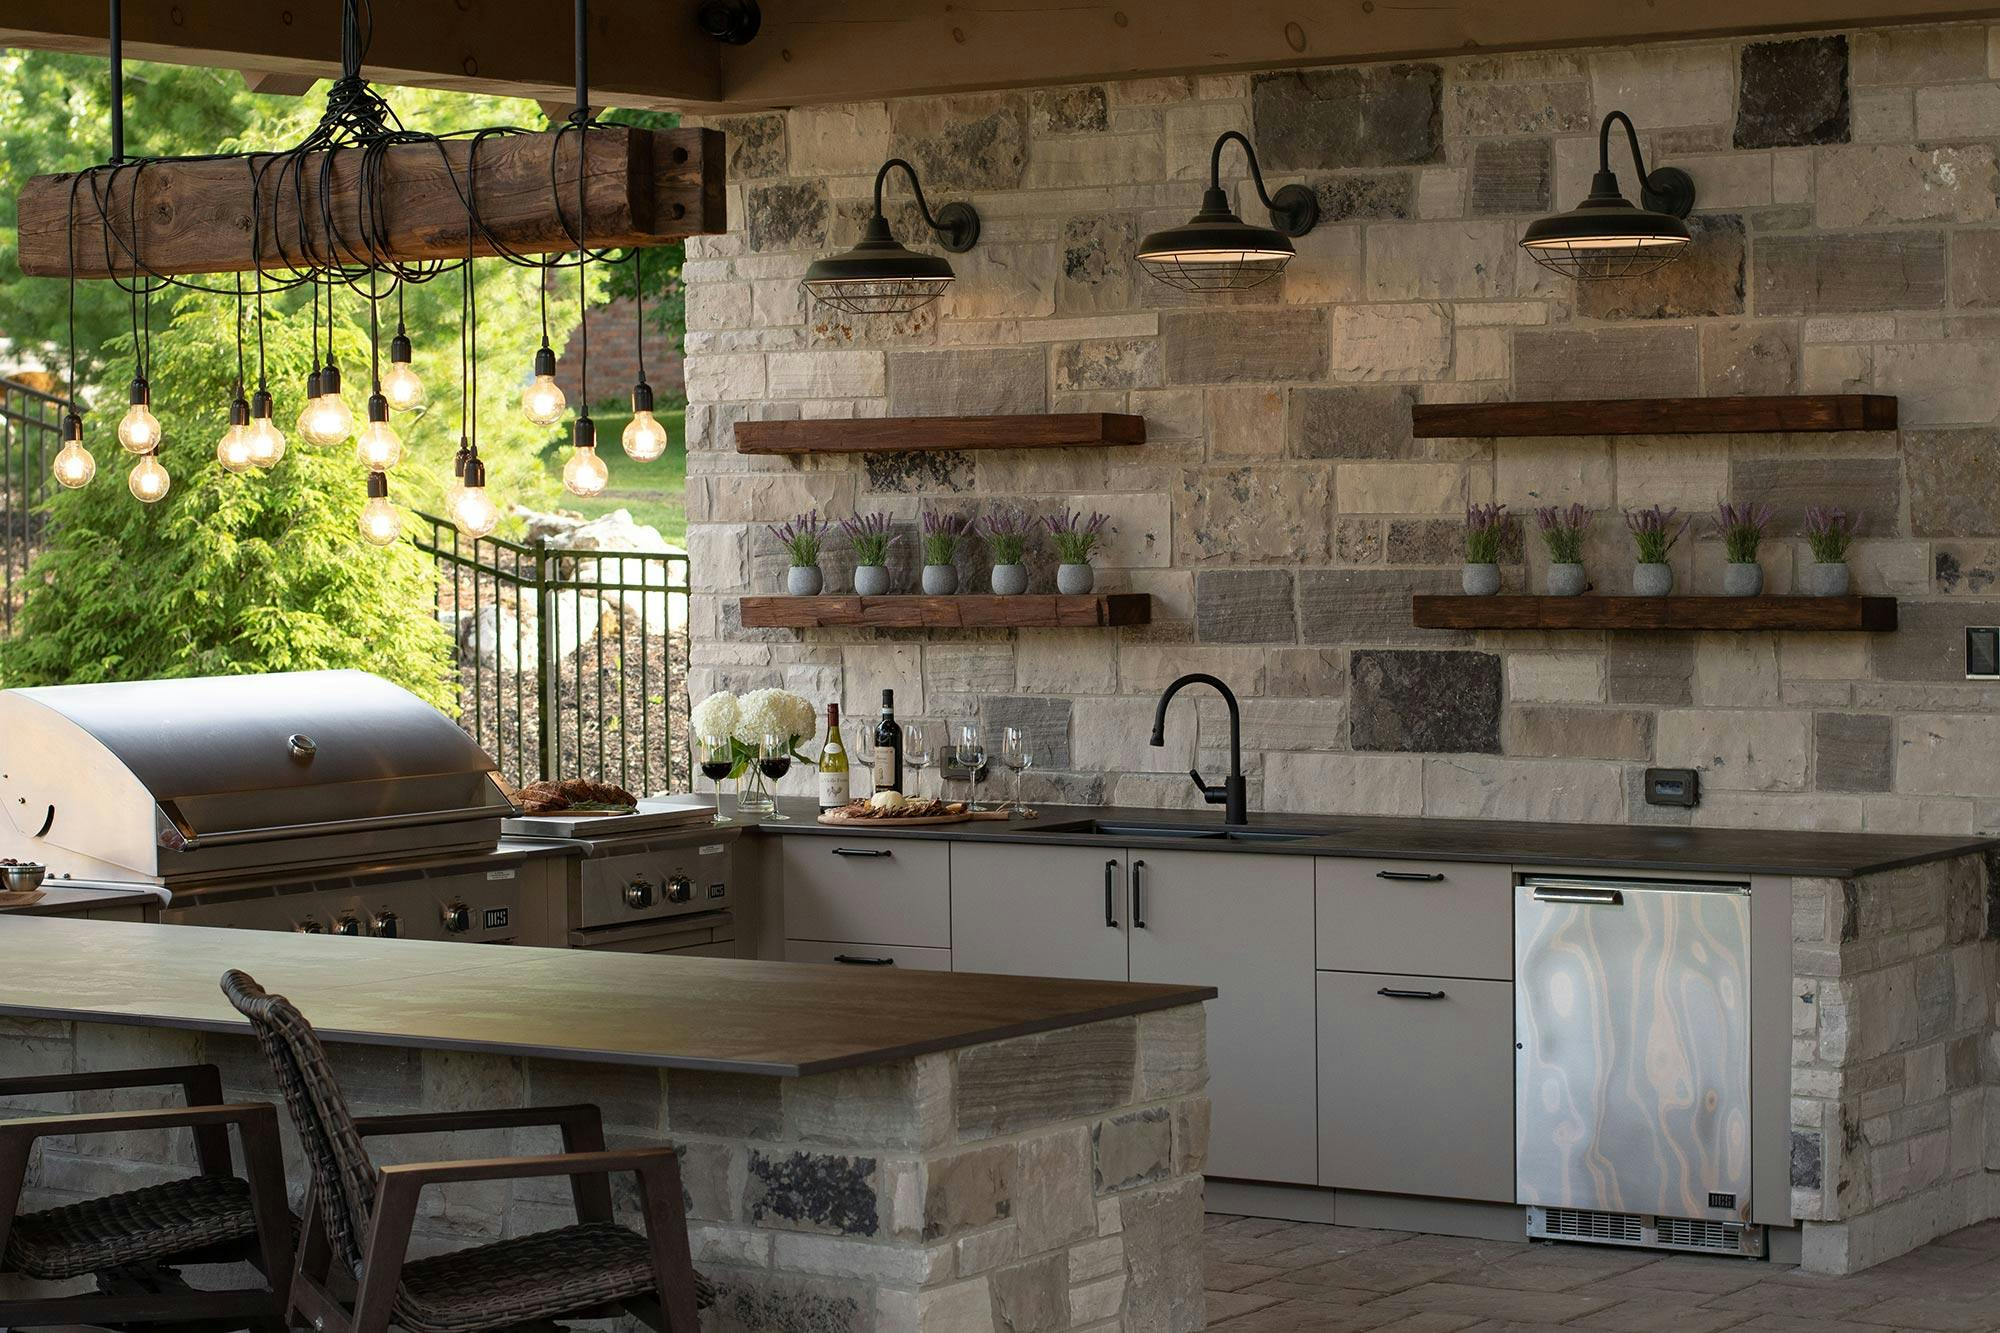 Numéro d'image 32 de la section actuelle de The perfect rustic outdoor kitchen with DKTN and Urban Bonfire de Cosentino France